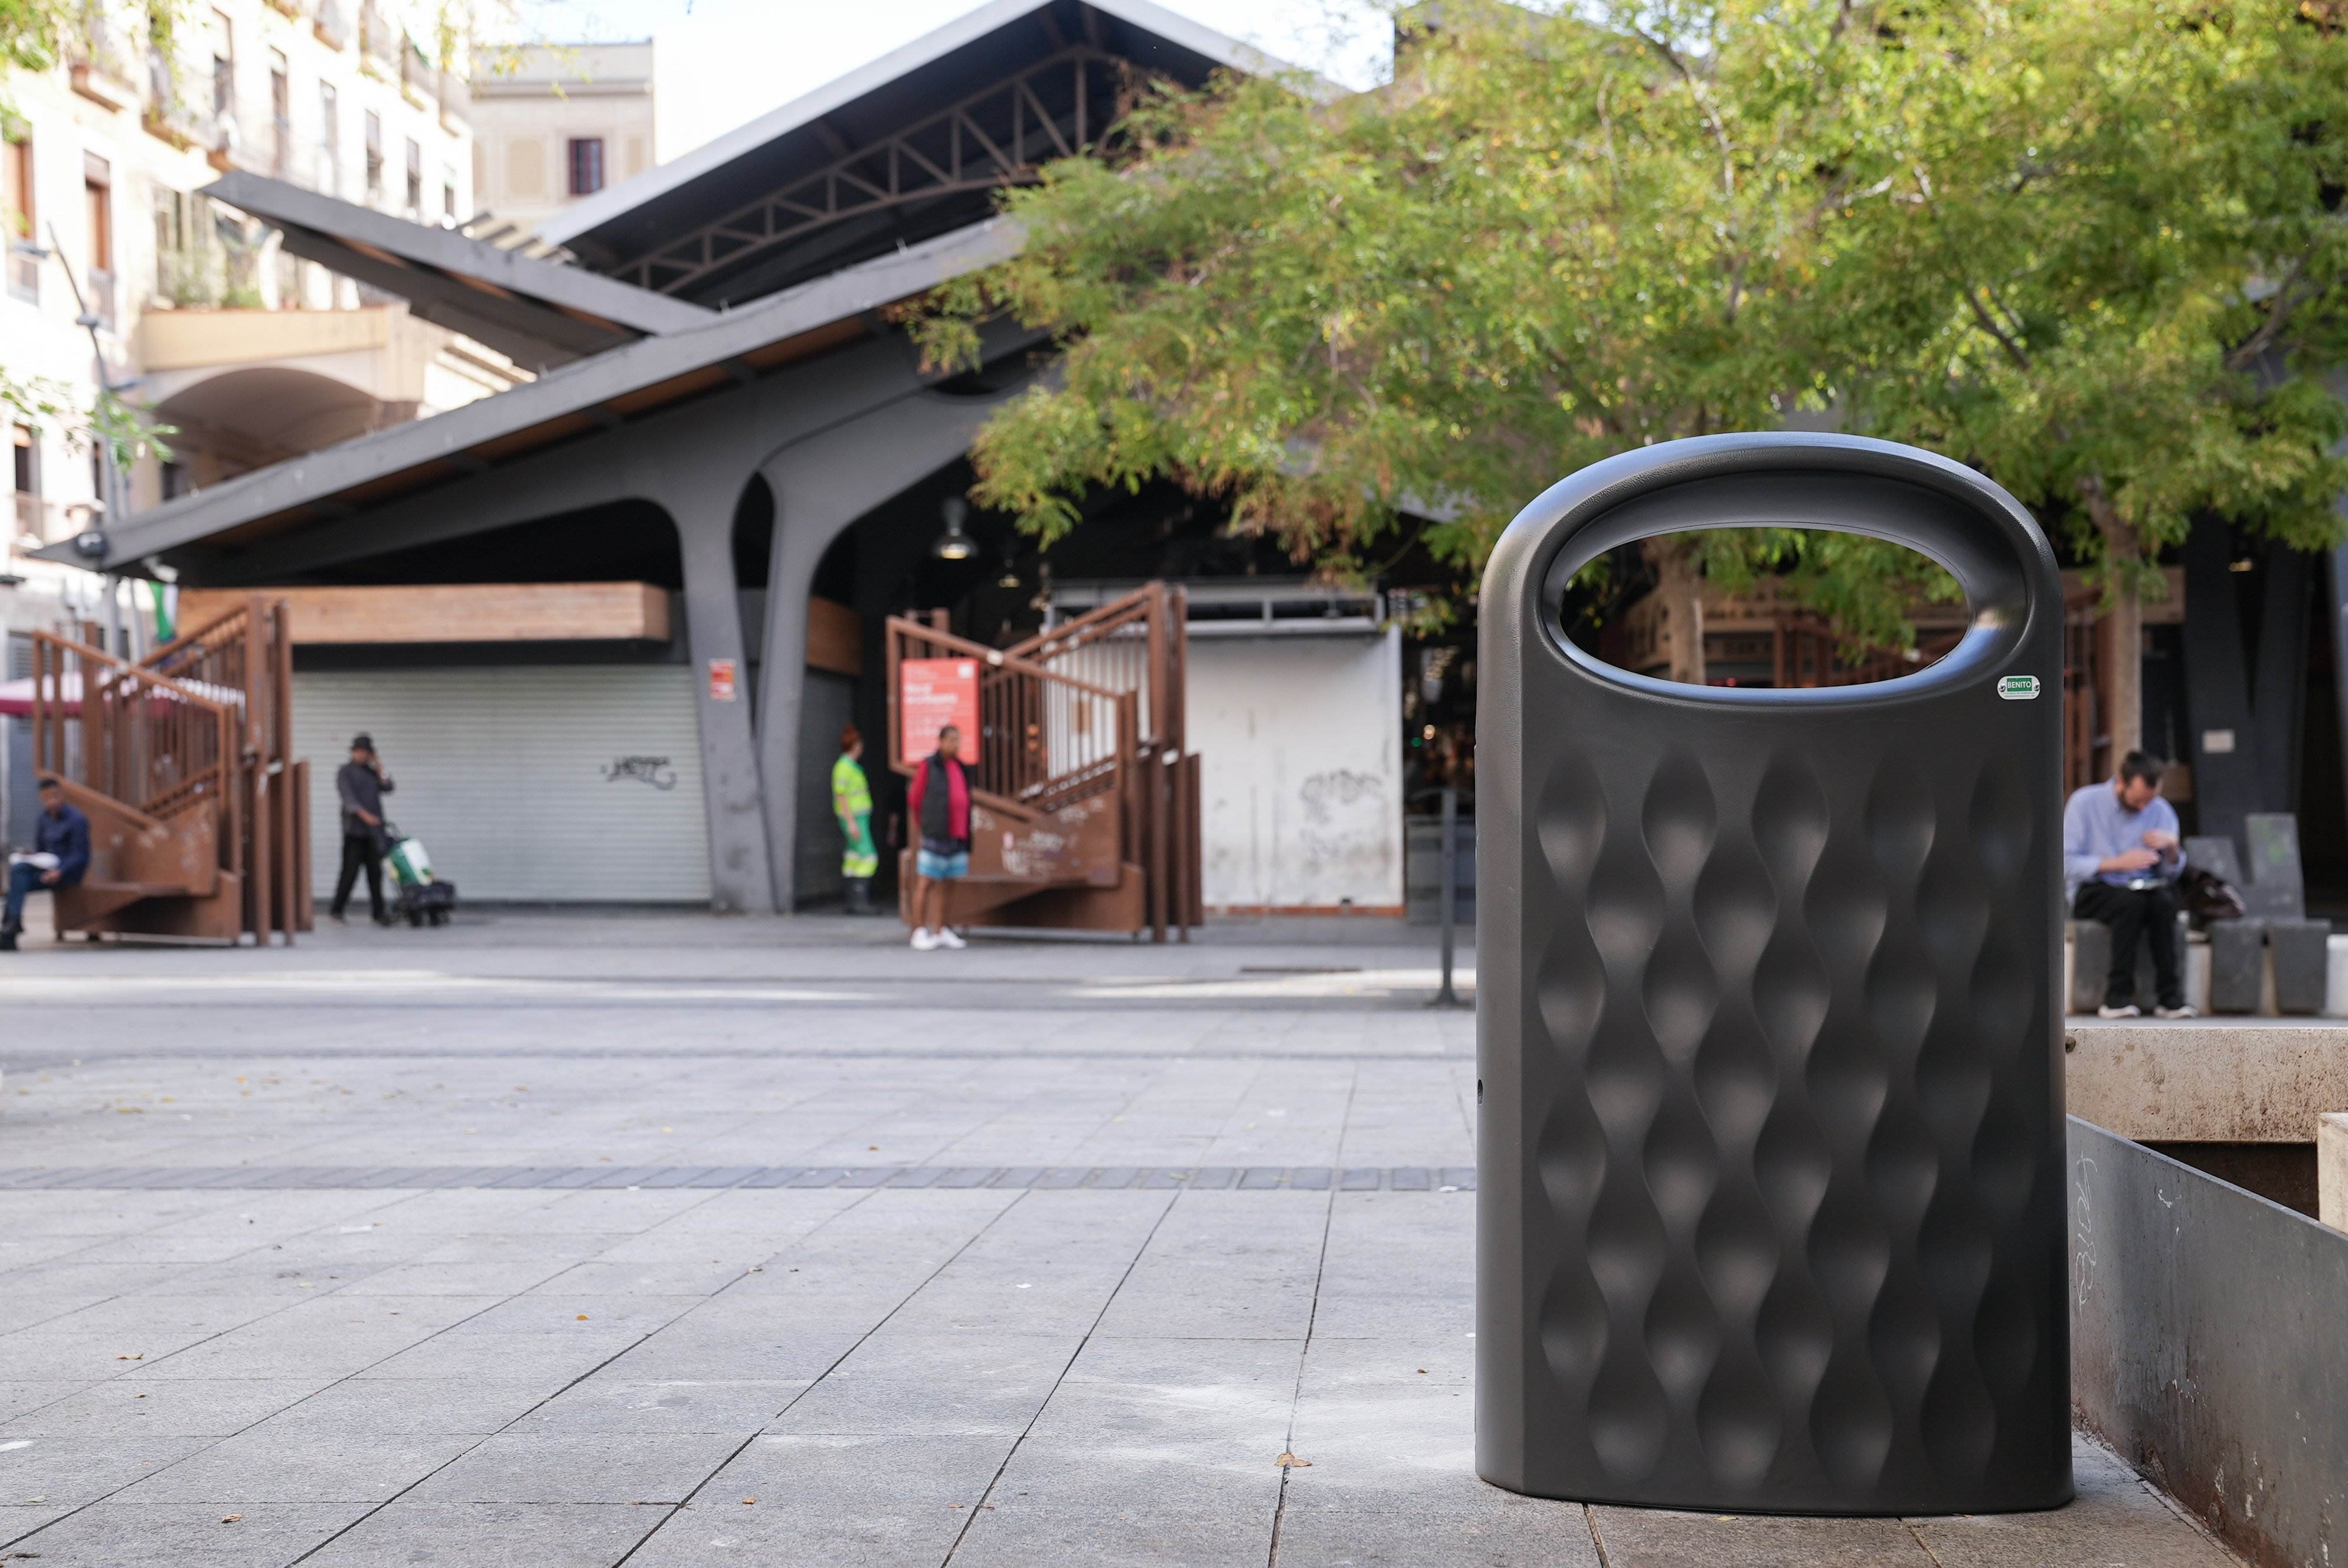 Así son las nuevas papeleras antigaviota instaladas en el distrito de Ciutat Vella de Barcelona